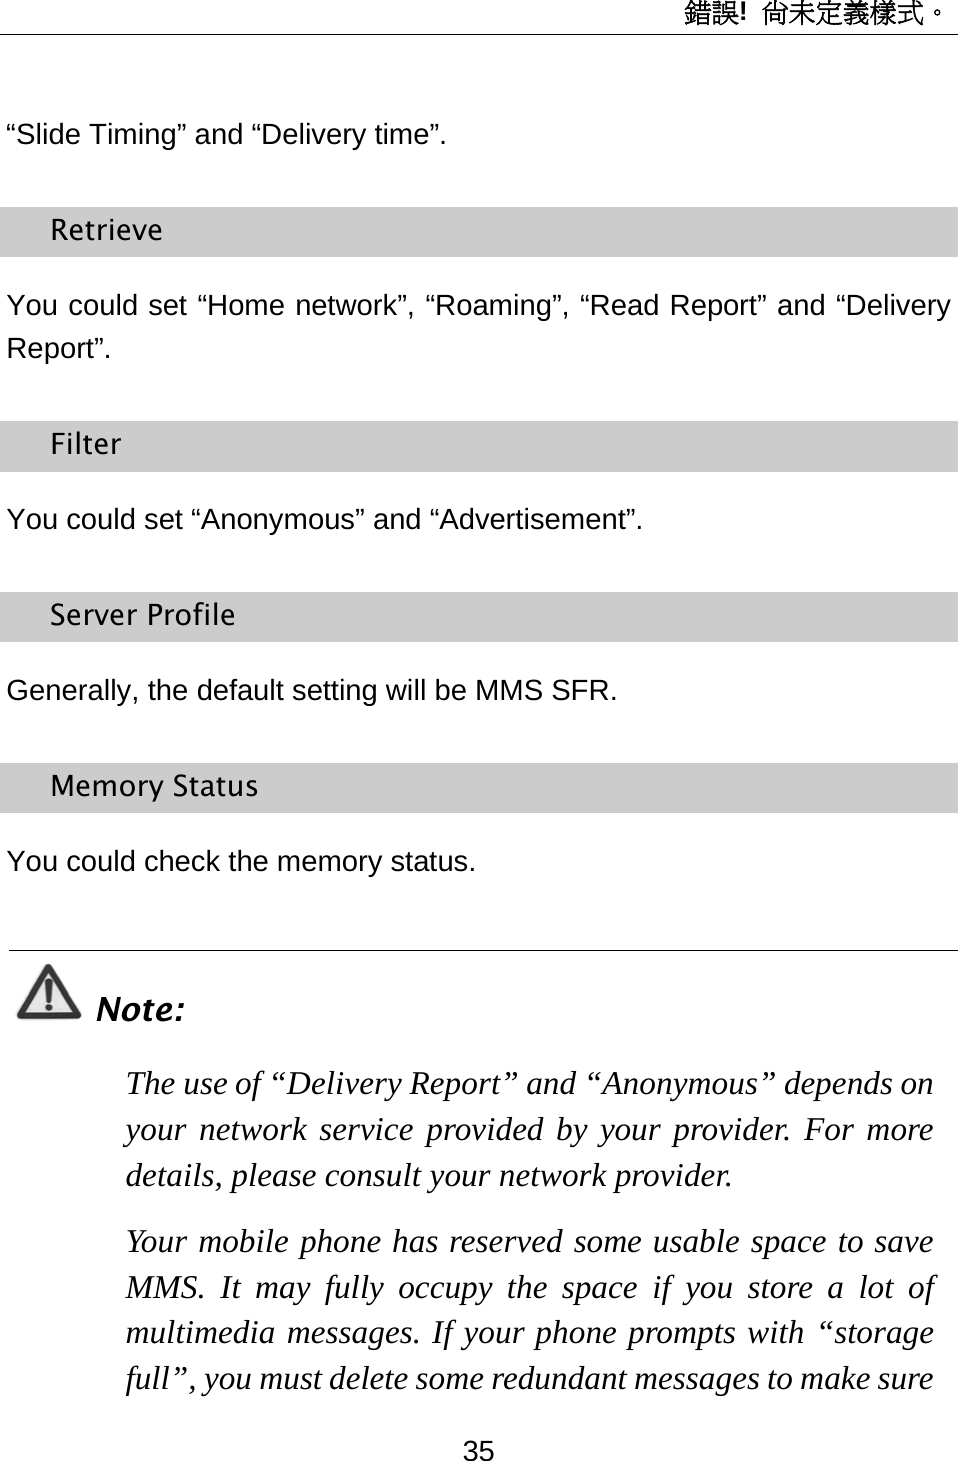 錯誤!  尚未定義樣式。 35 “Slide Timing” and “Delivery time”. Retrieve You could set “Home network”, “Roaming”, “Read Report” and “Delivery Report”. Filter You could set “Anonymous” and “Advertisement”. Server Profile Generally, the default setting will be MMS SFR. Memory Status You could check the memory status.  Note: The use of “Delivery Report” and “Anonymous” depends on your network service provided by your provider. For more details, please consult your network provider. Your mobile phone has reserved some usable space to save MMS. It may fully occupy the space if you store a lot of multimedia messages. If your phone prompts with “storage full”, you must delete some redundant messages to make sure 